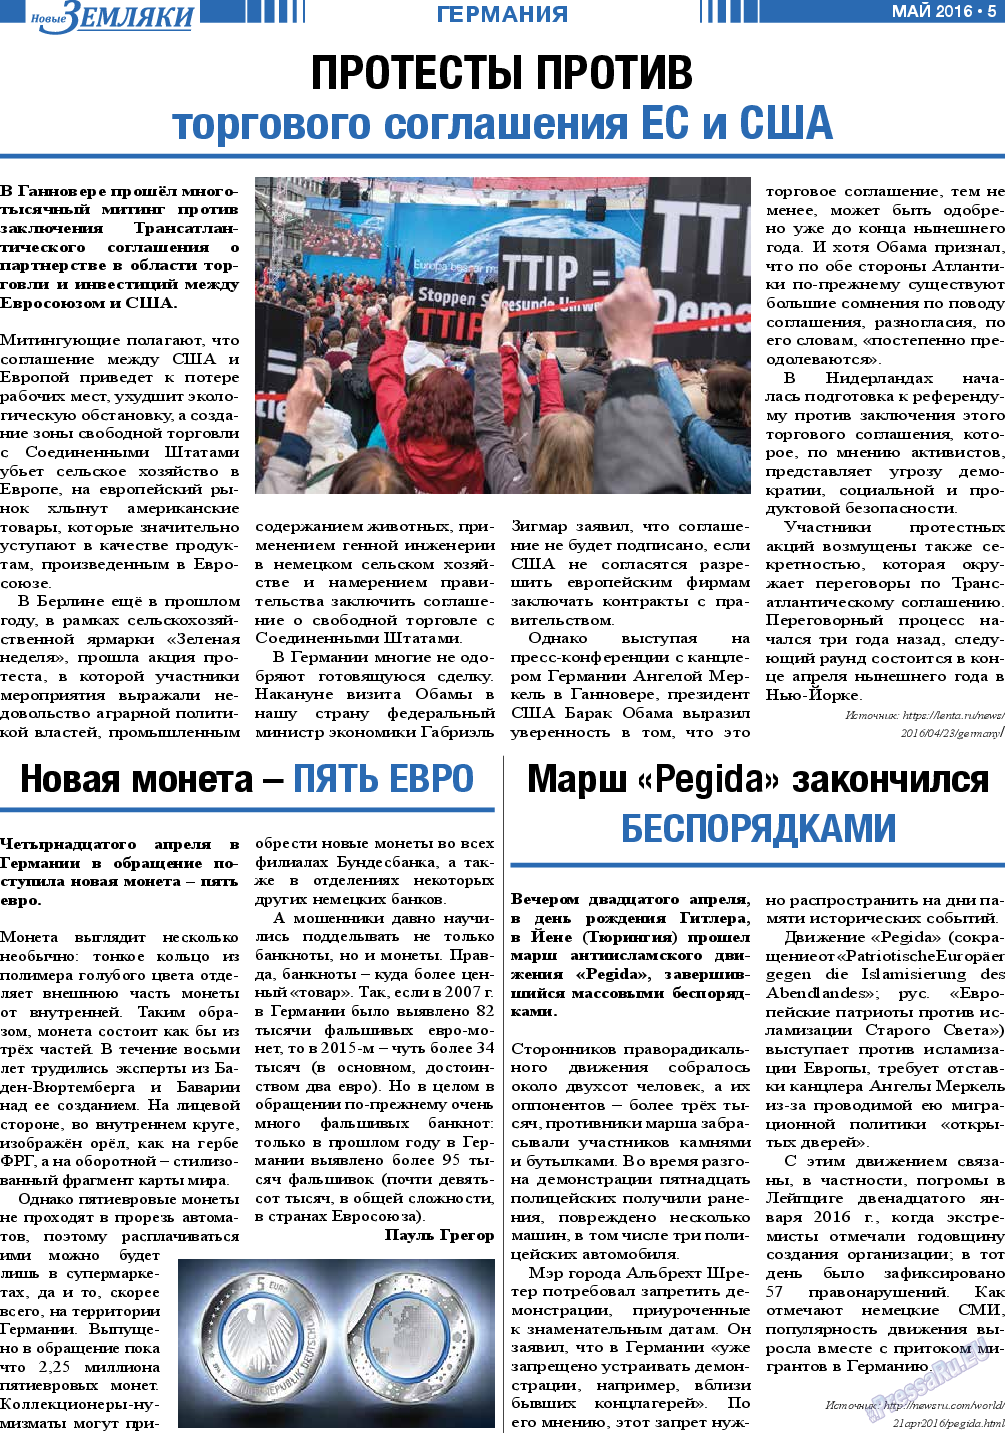 Новые Земляки (газета). 2016 год, номер 5, стр. 5